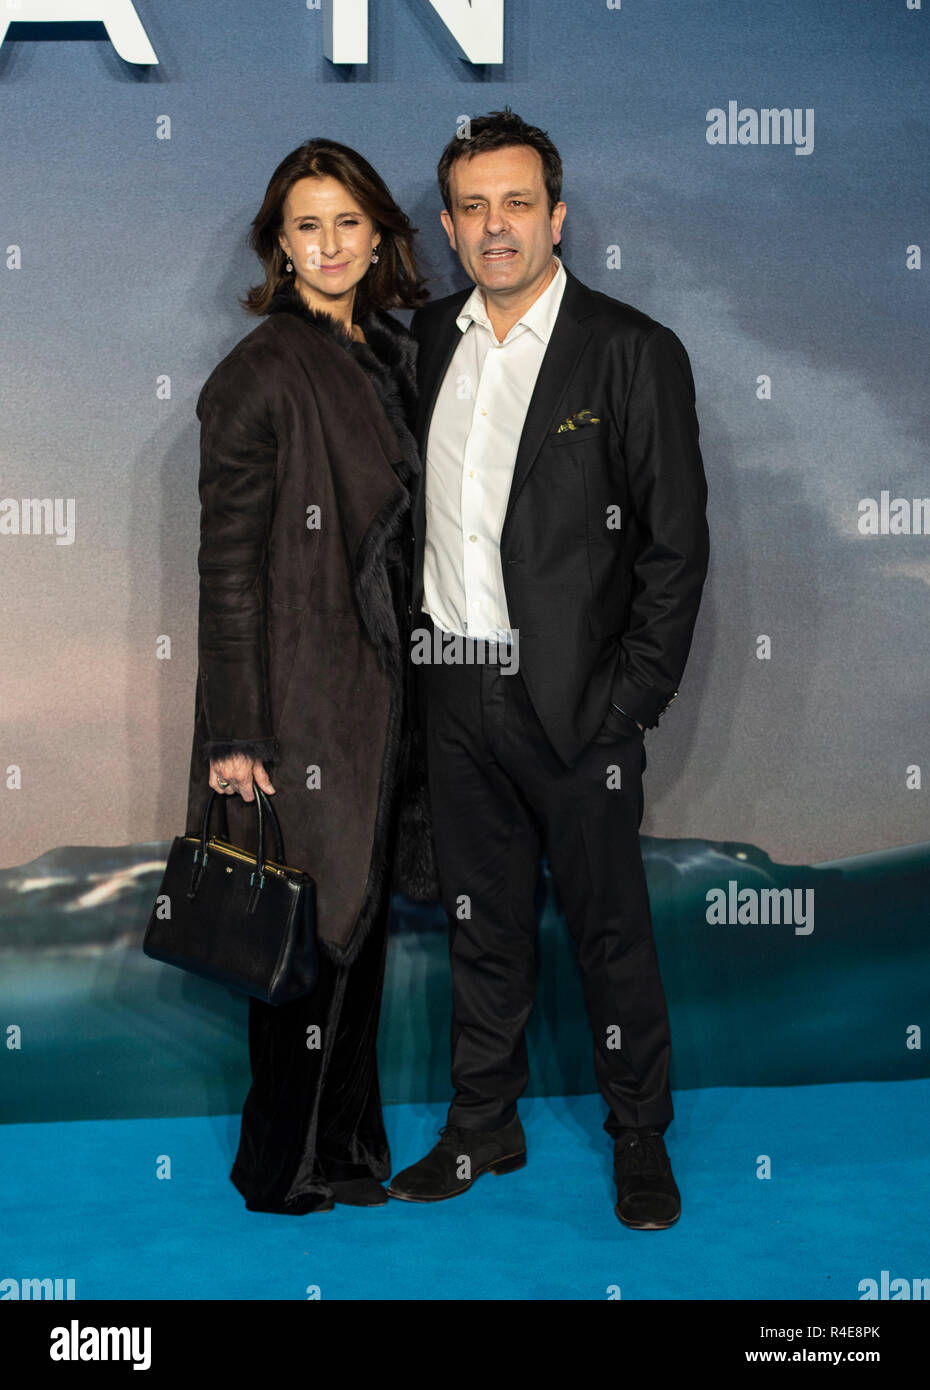 Emma Jacobs und Rupert Gregson-Williams besuchen die Weltpremiere von "aquaman" im Cineworld Leicester Square. Stockfoto